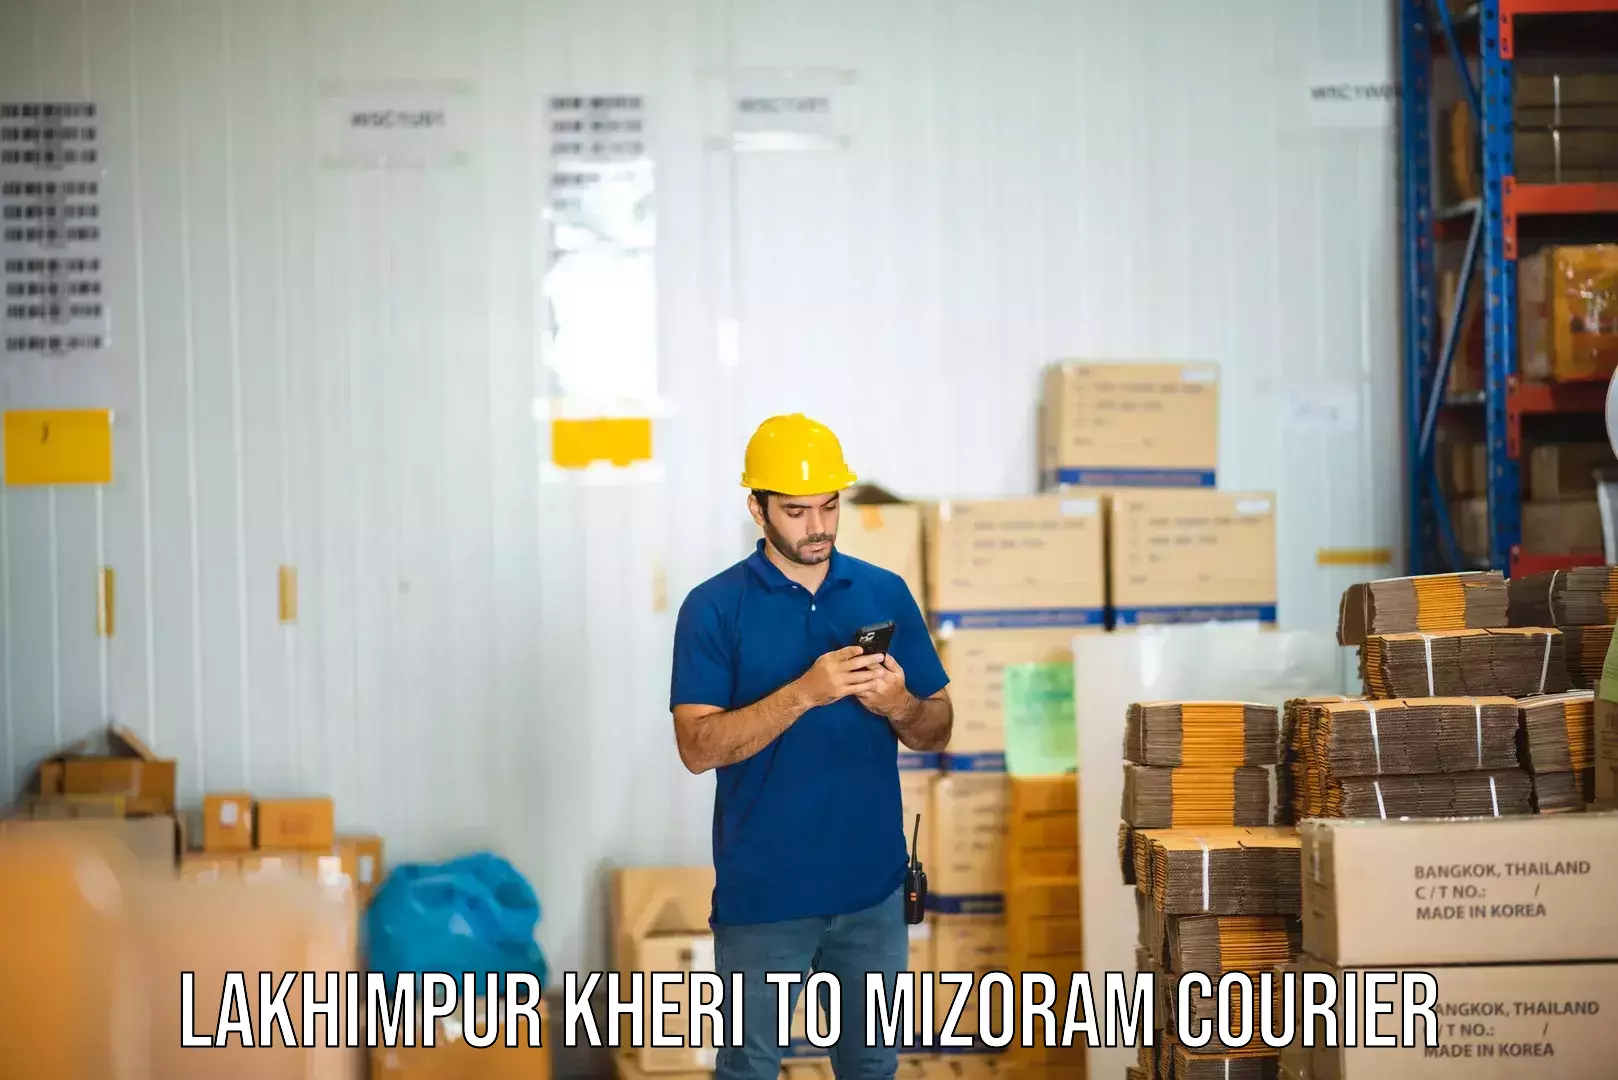 Urban courier service Lakhimpur Kheri to Thenzawl